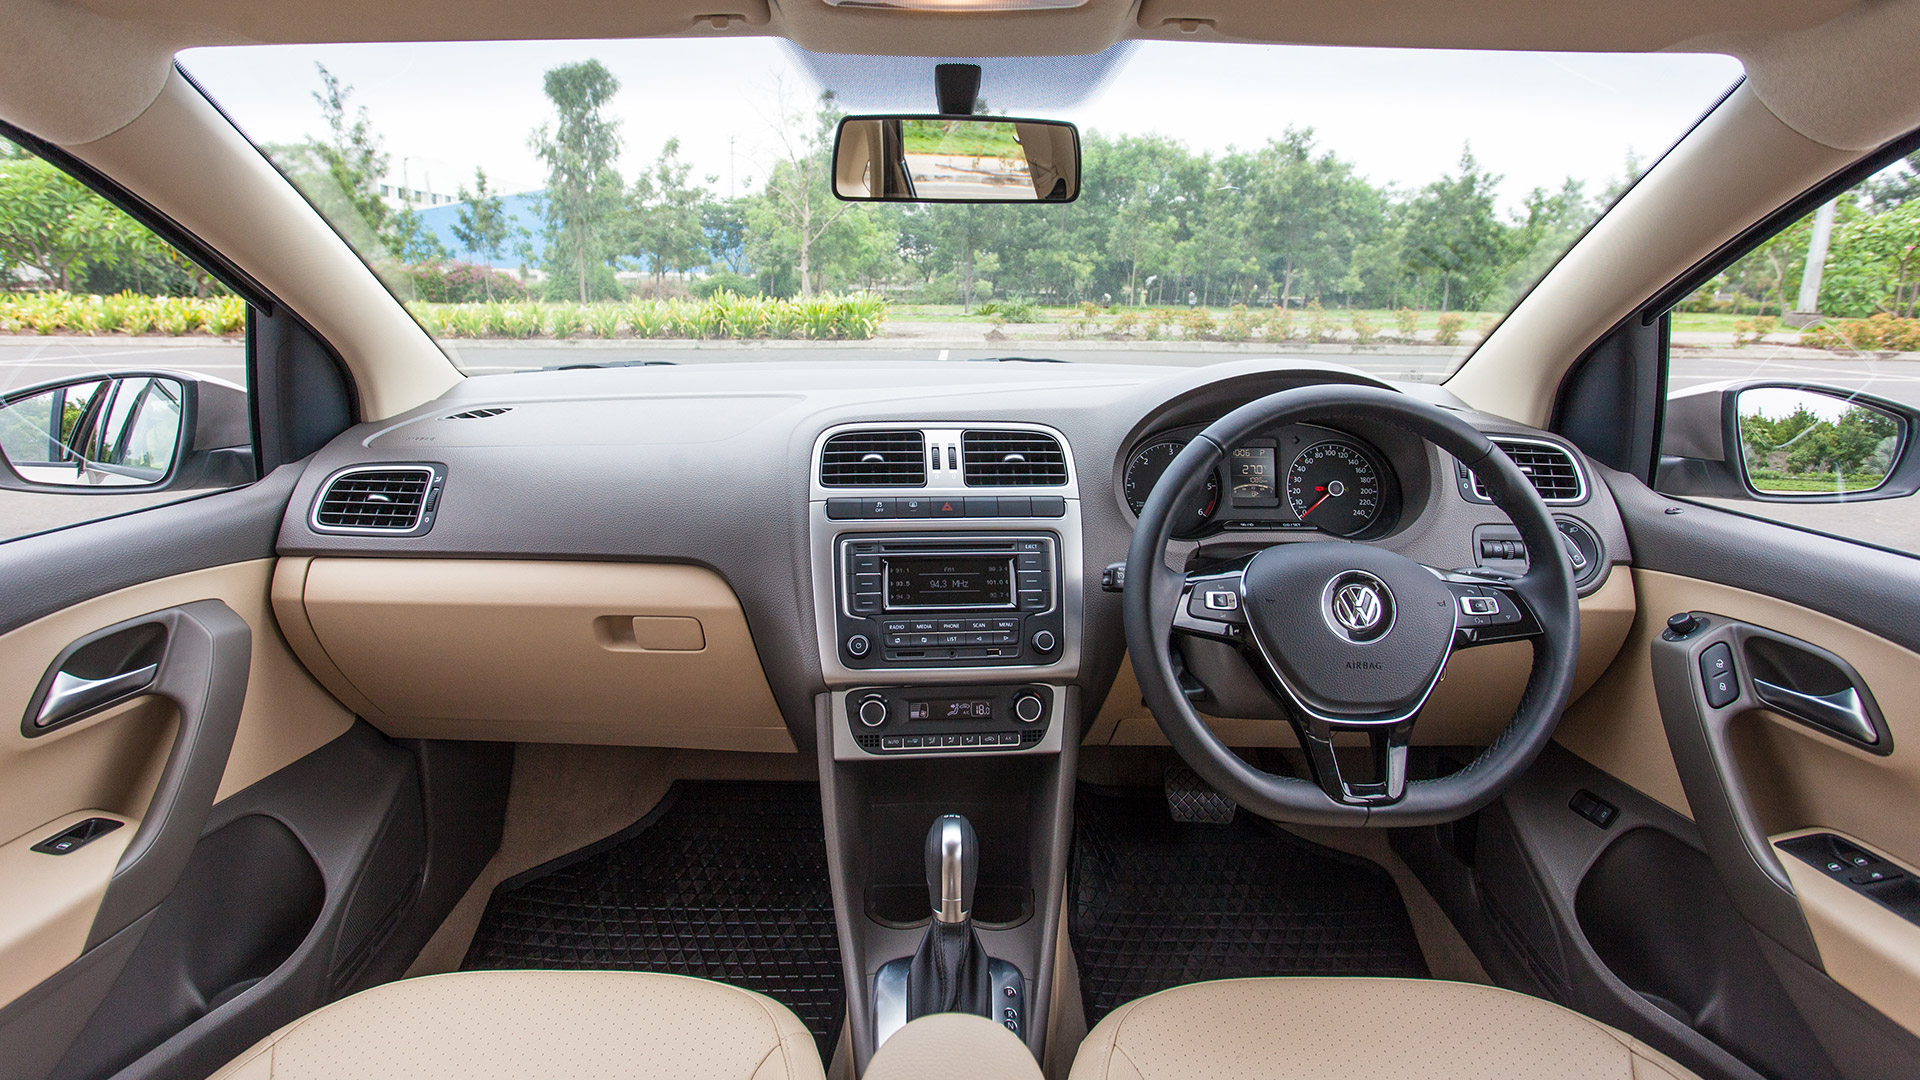 Volkswagen Vento 2015 Compare